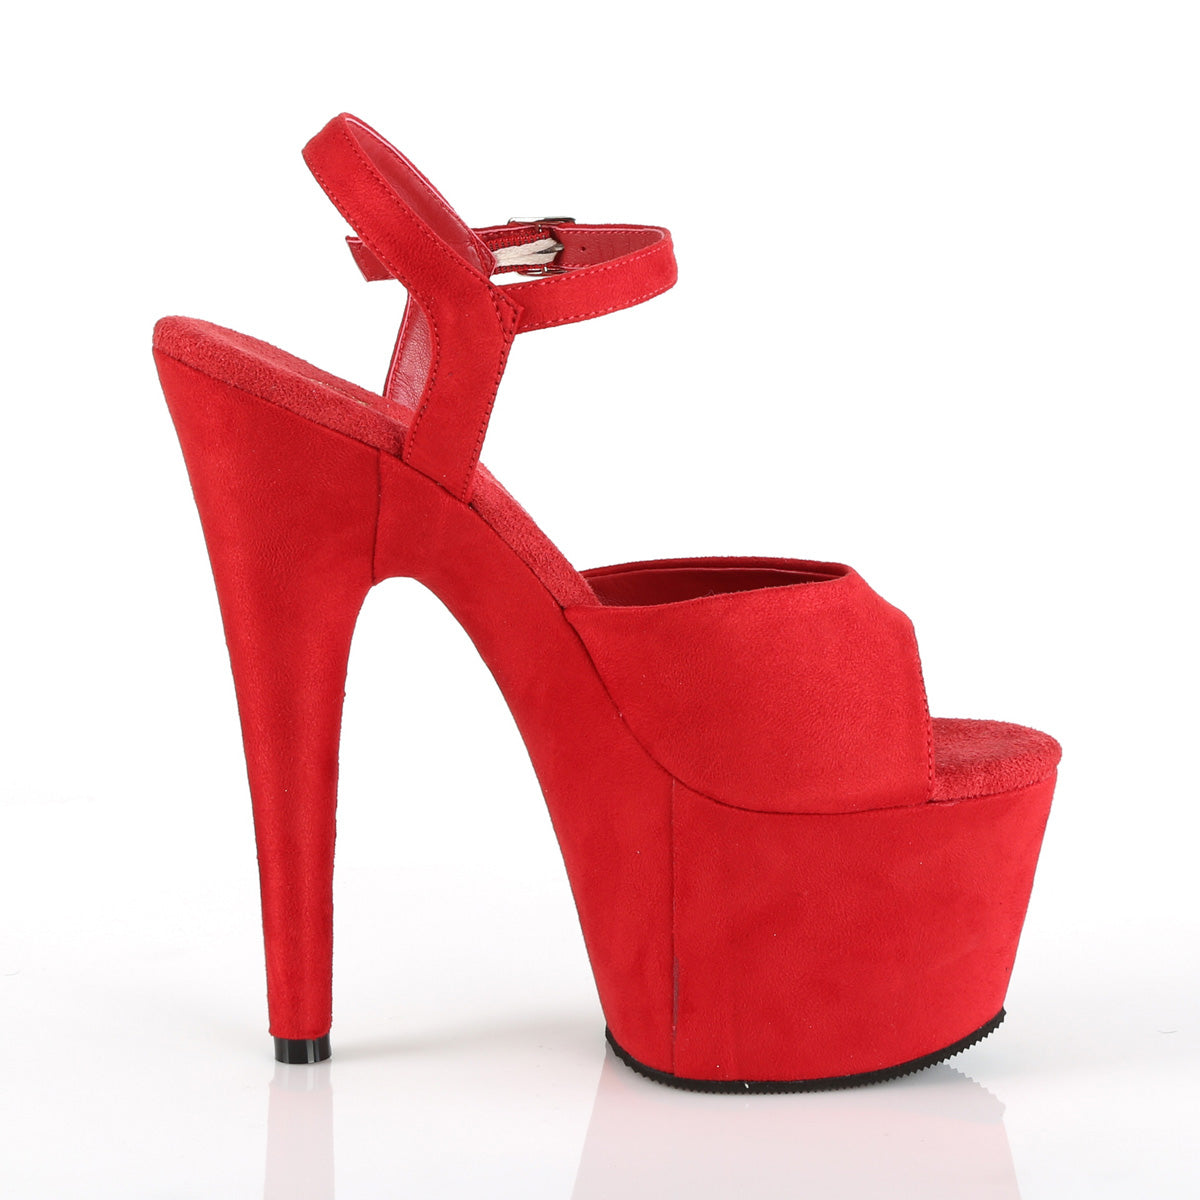 Pleaser Sandales pour femmes ADORE-709FS rouge en faux daim / daim rouge rouge